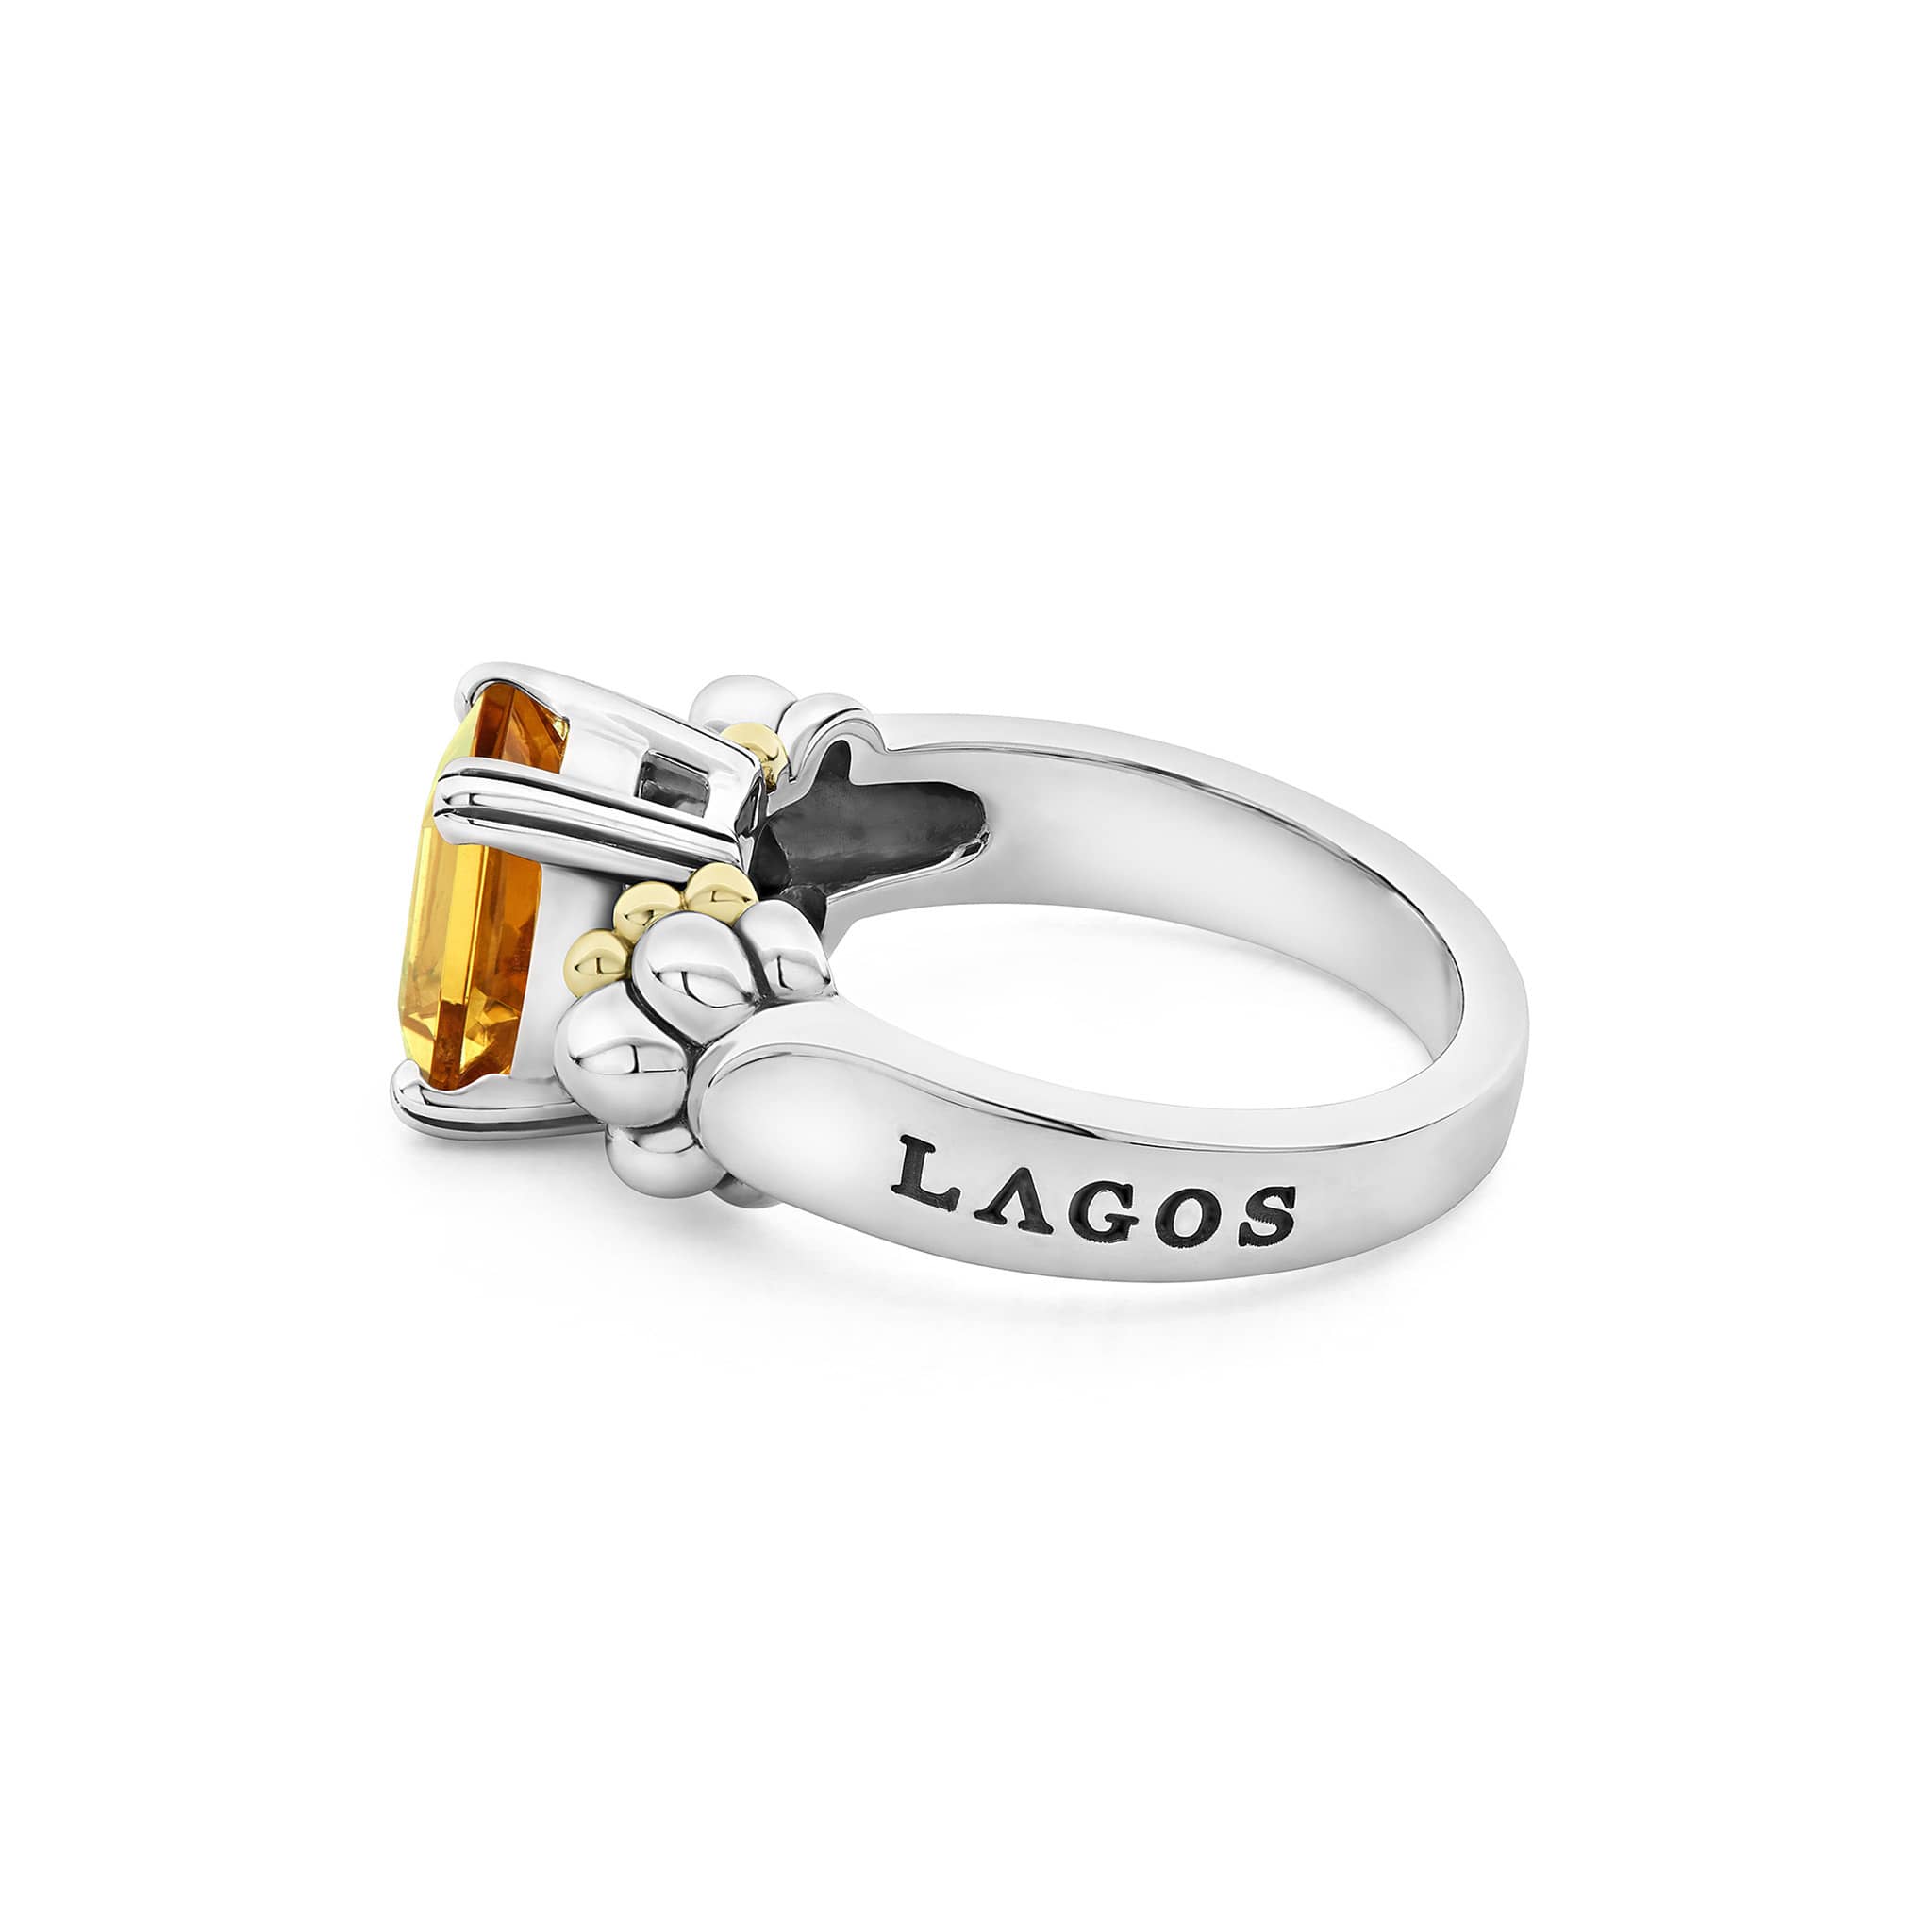 Glacier Small Emerald-Cut Citrine Ring – LAGOS